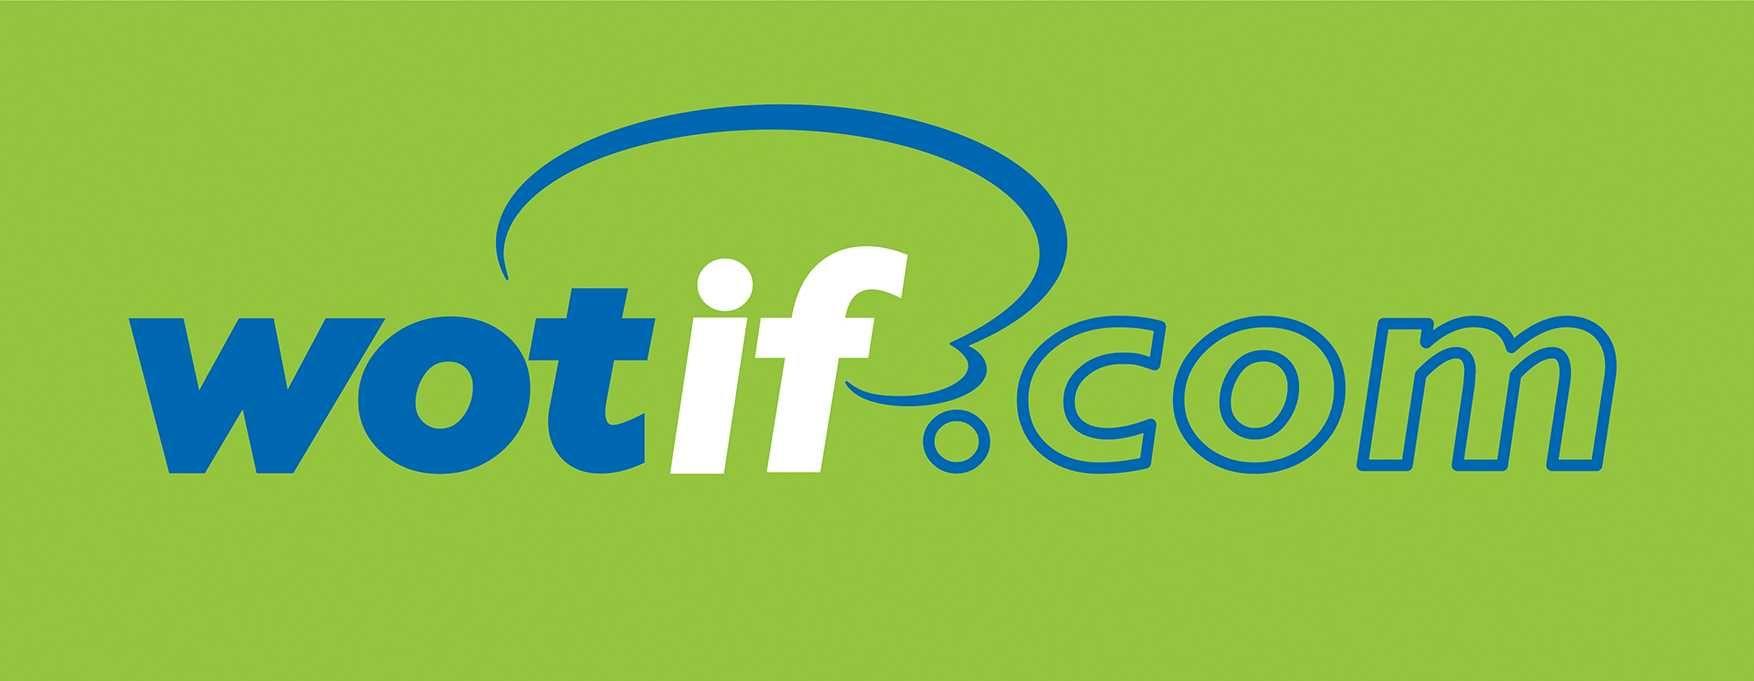 Wotif Logo - Wotif App Reviews | App Travel Review